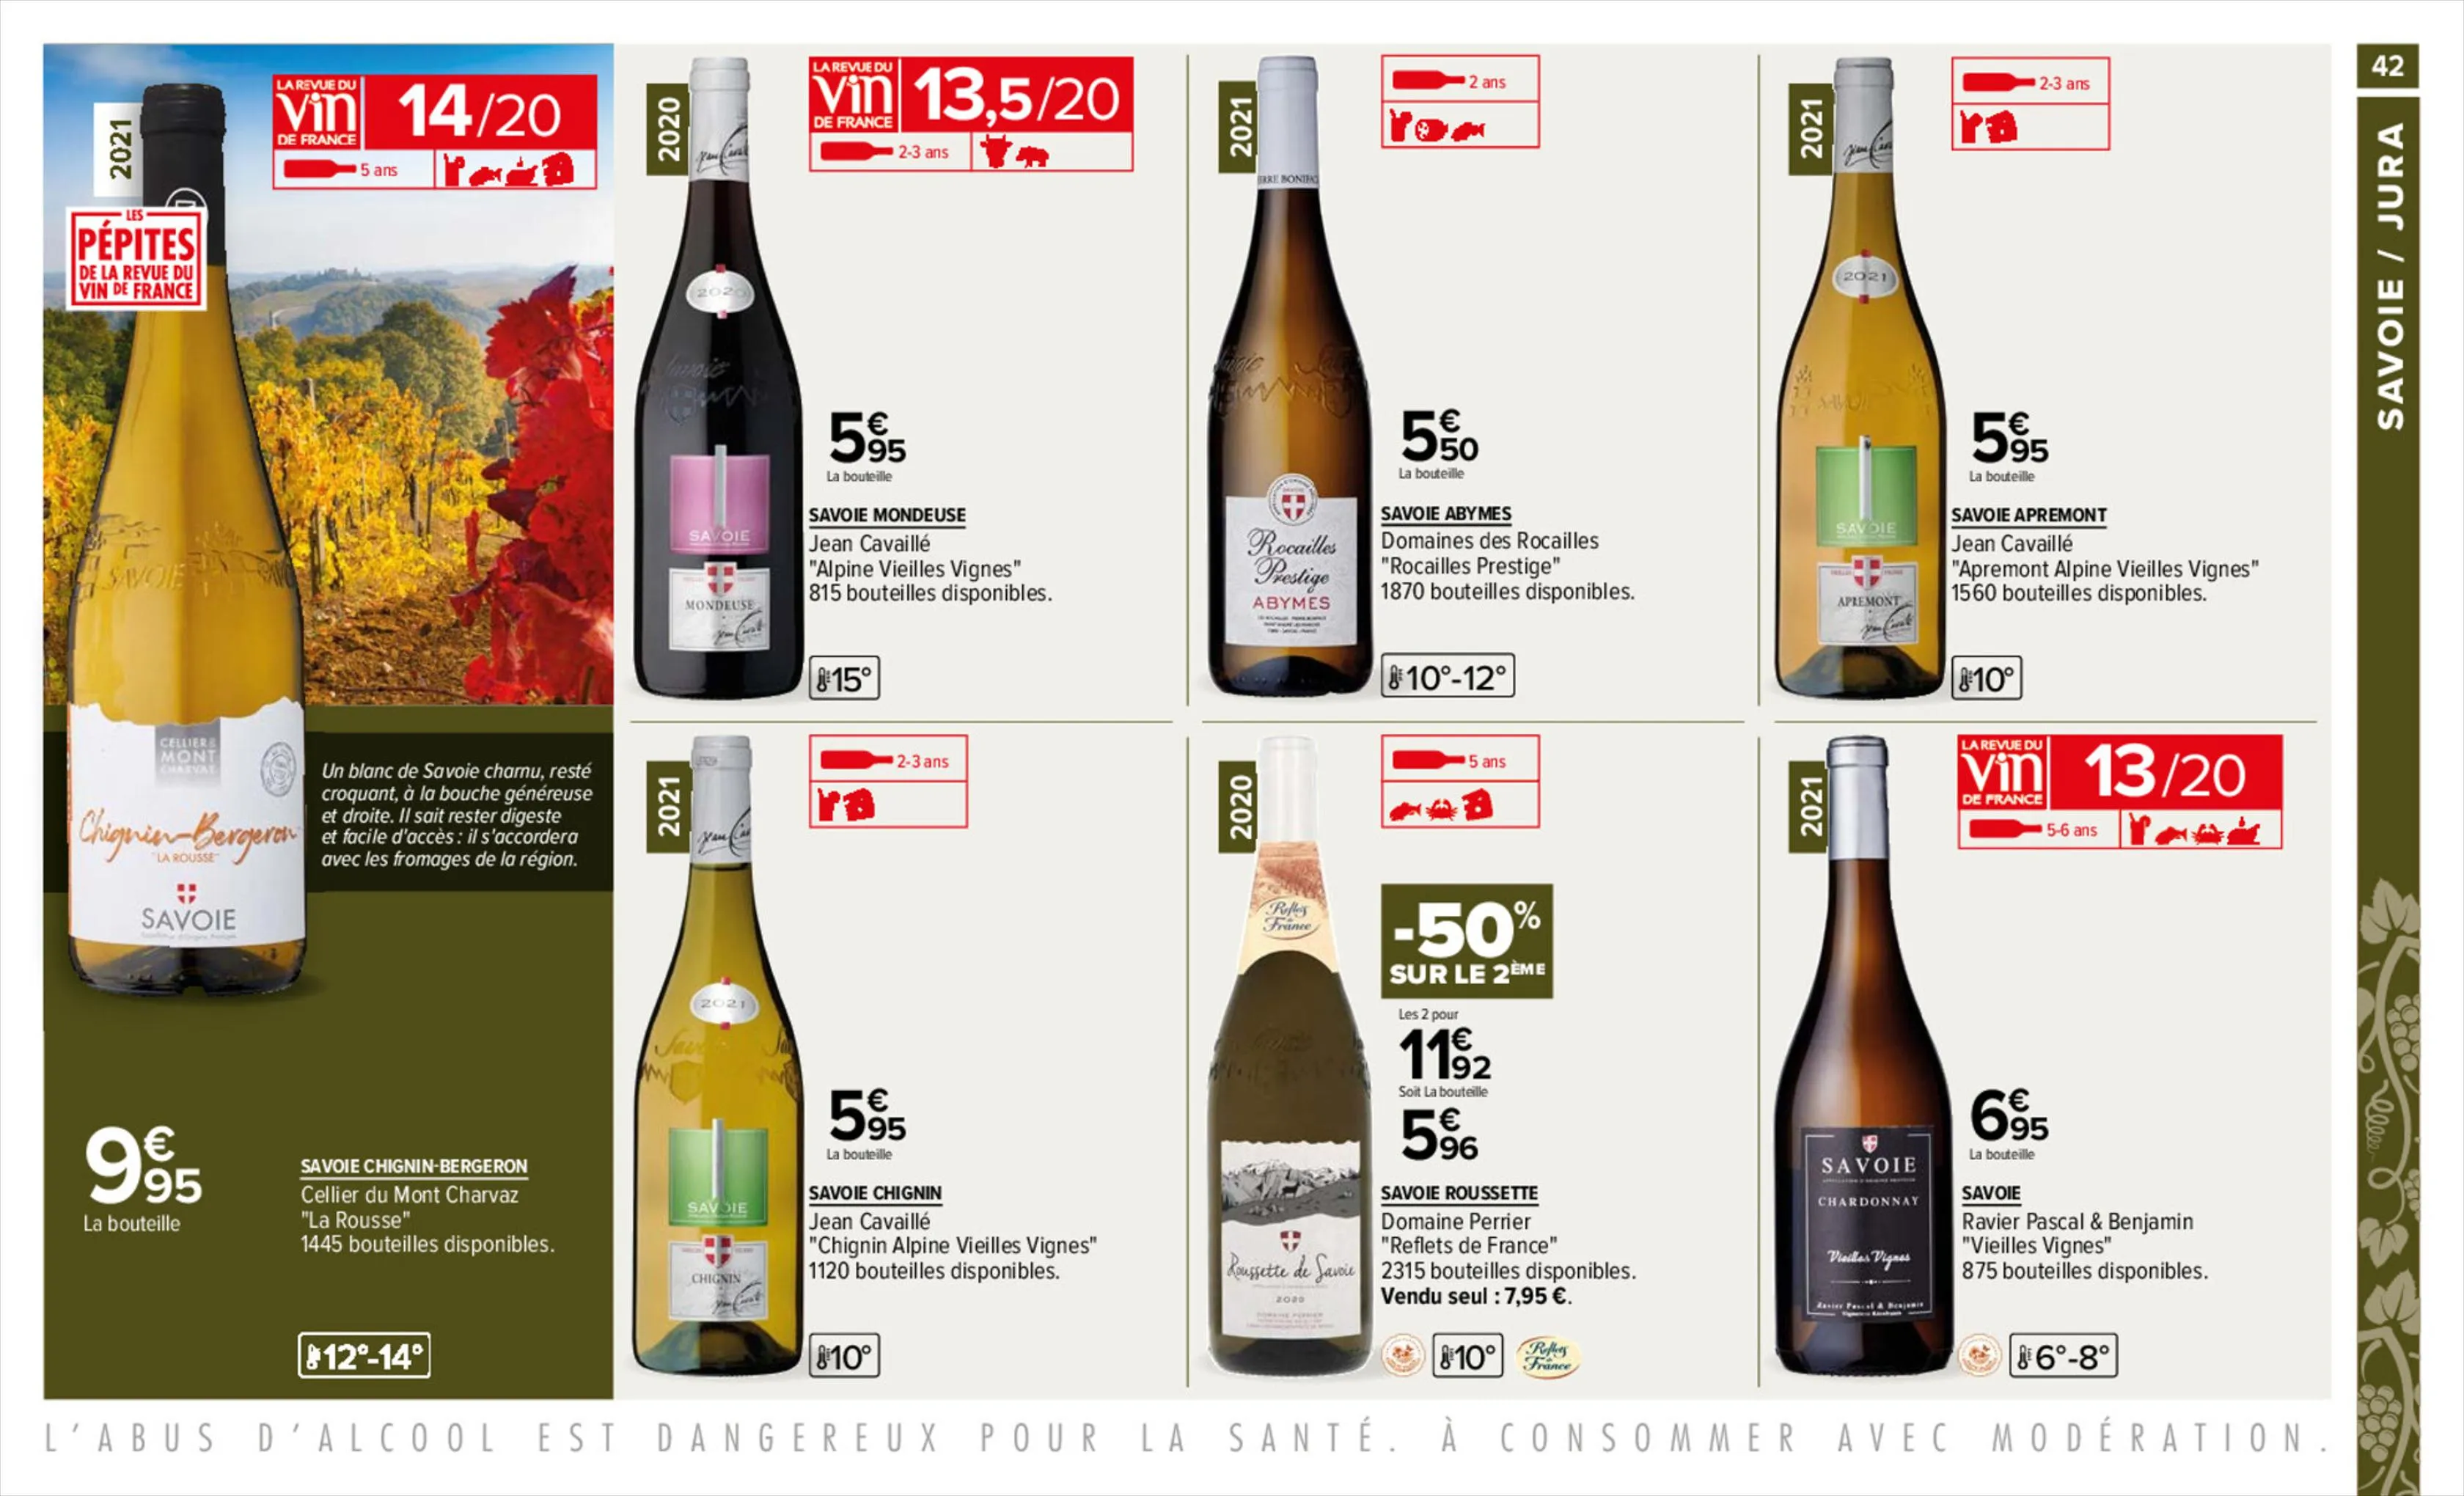 Catalogue Foire aux vins, page 00042